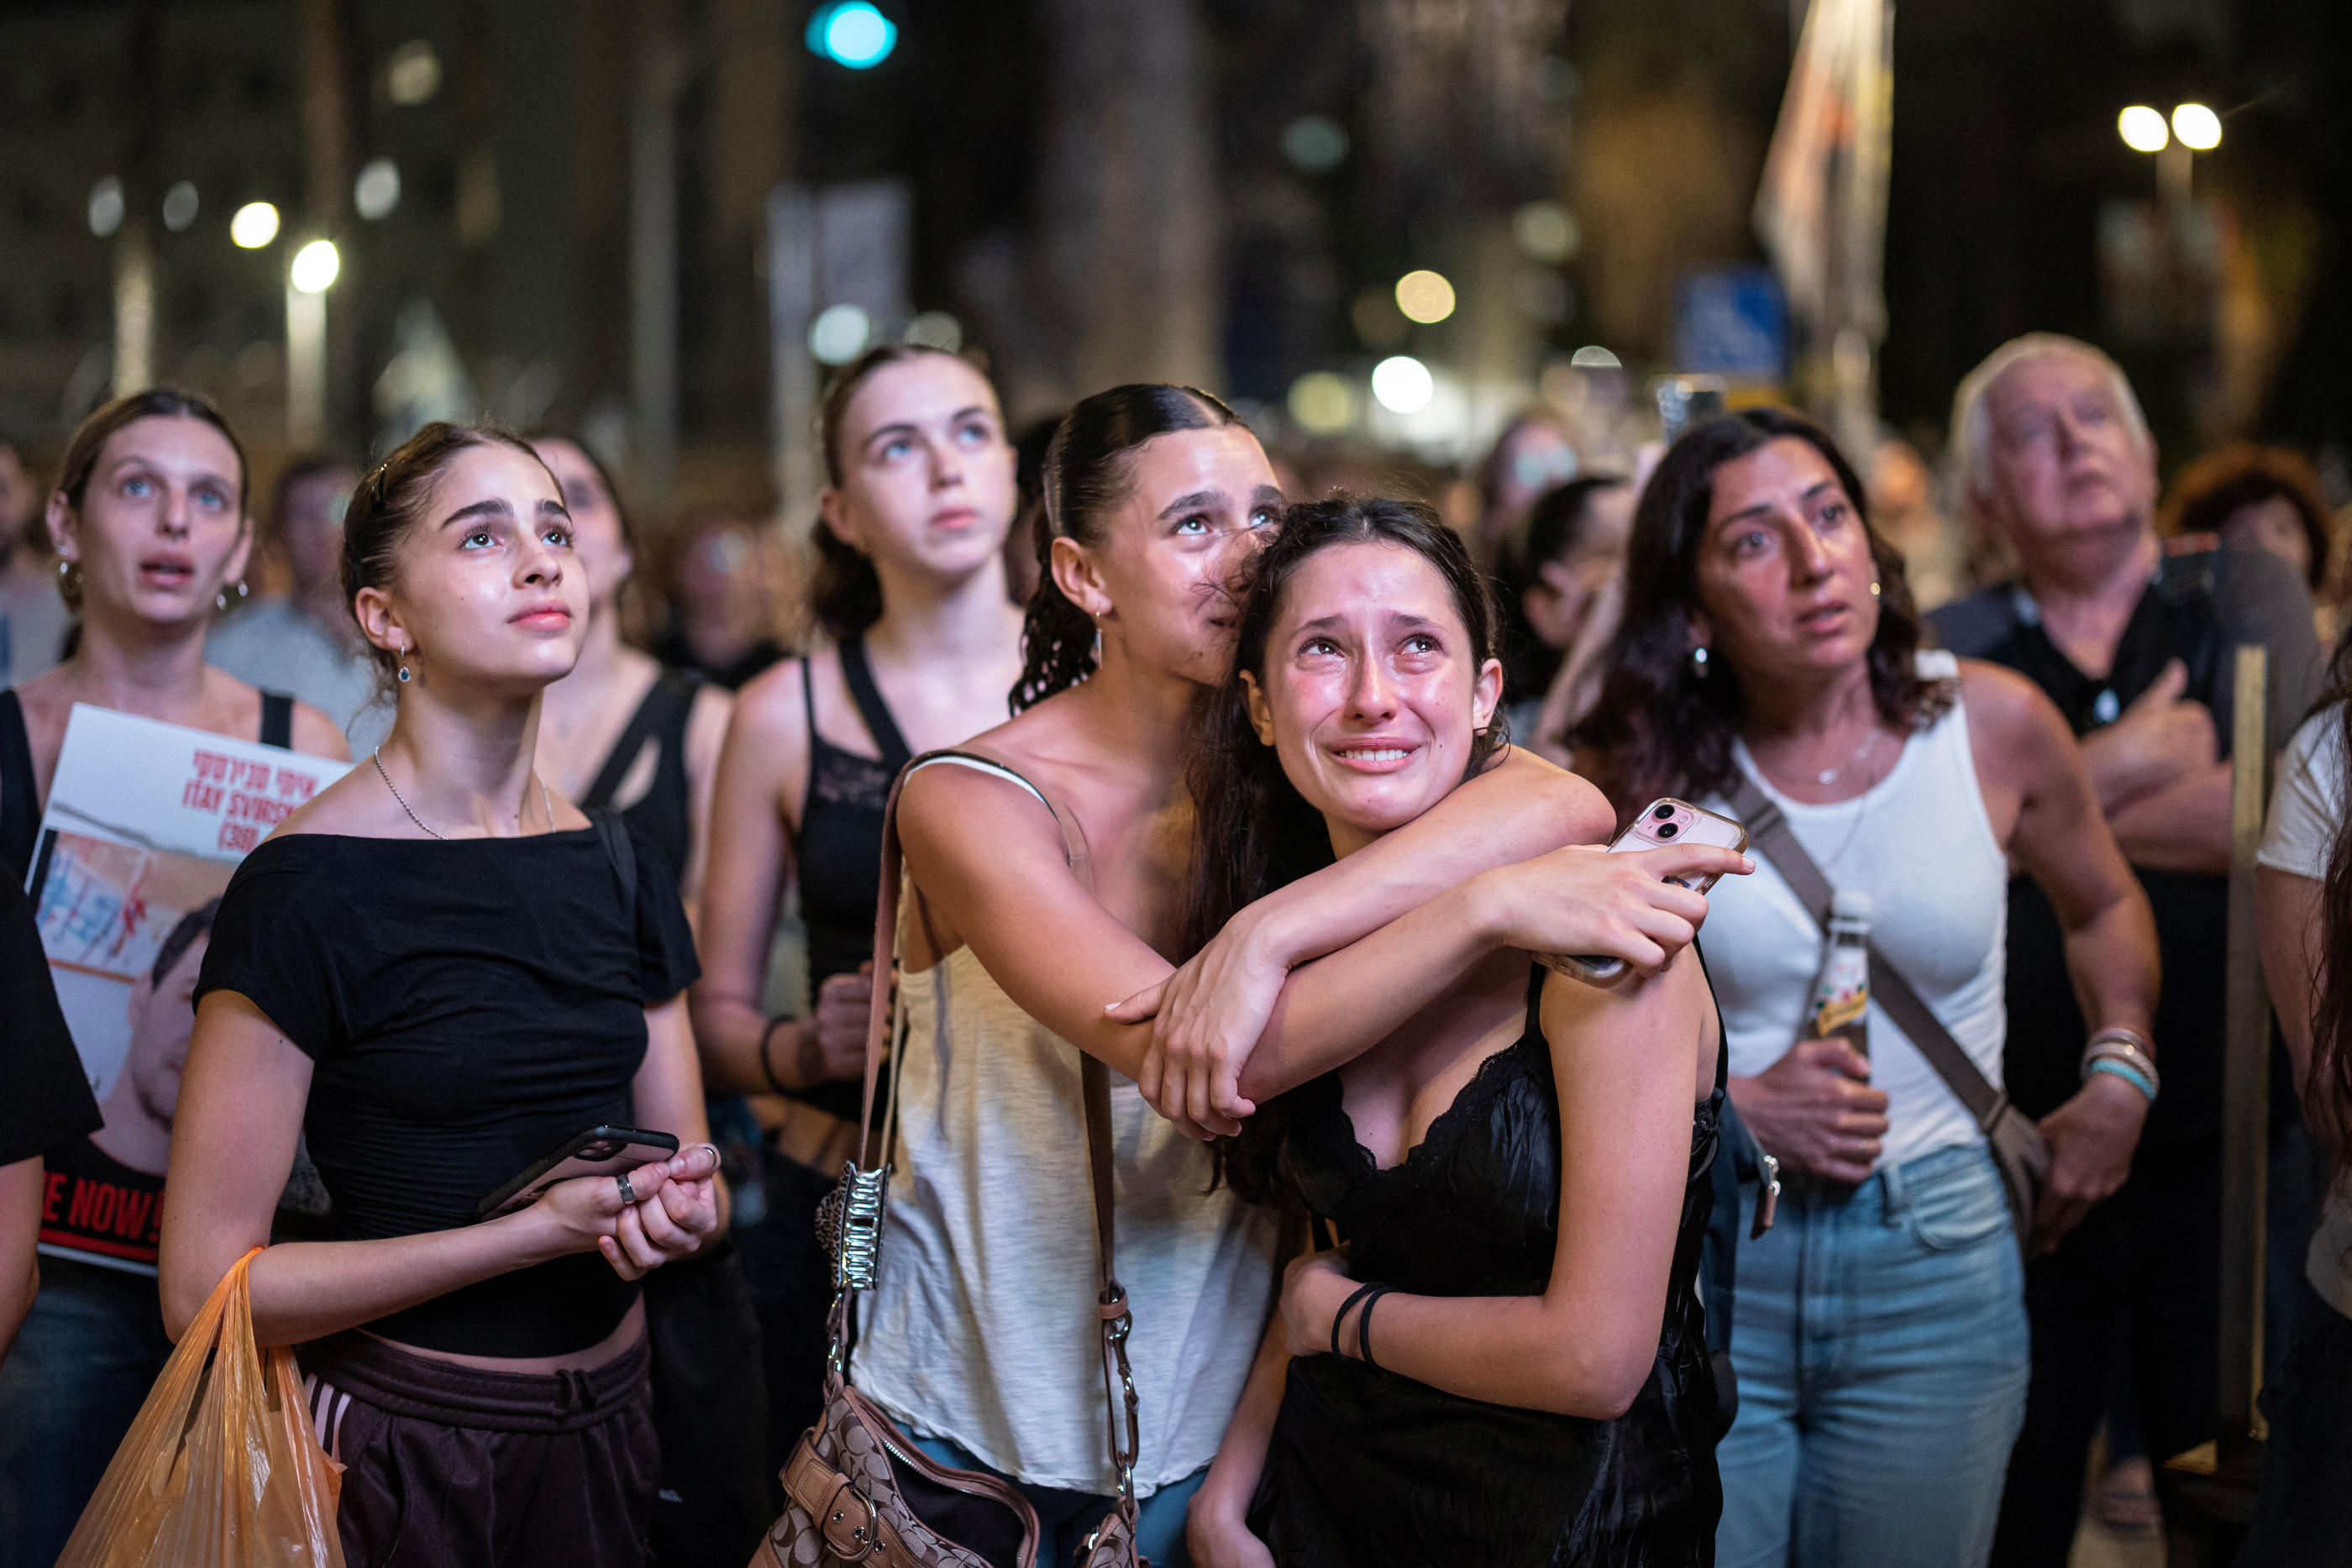 Des femmes s'embrassent lors d'un rassemblement en soutien aux otages de Gaza demandant leur libération, à Tel Aviv samedi. REUTERS/Marko Djurica